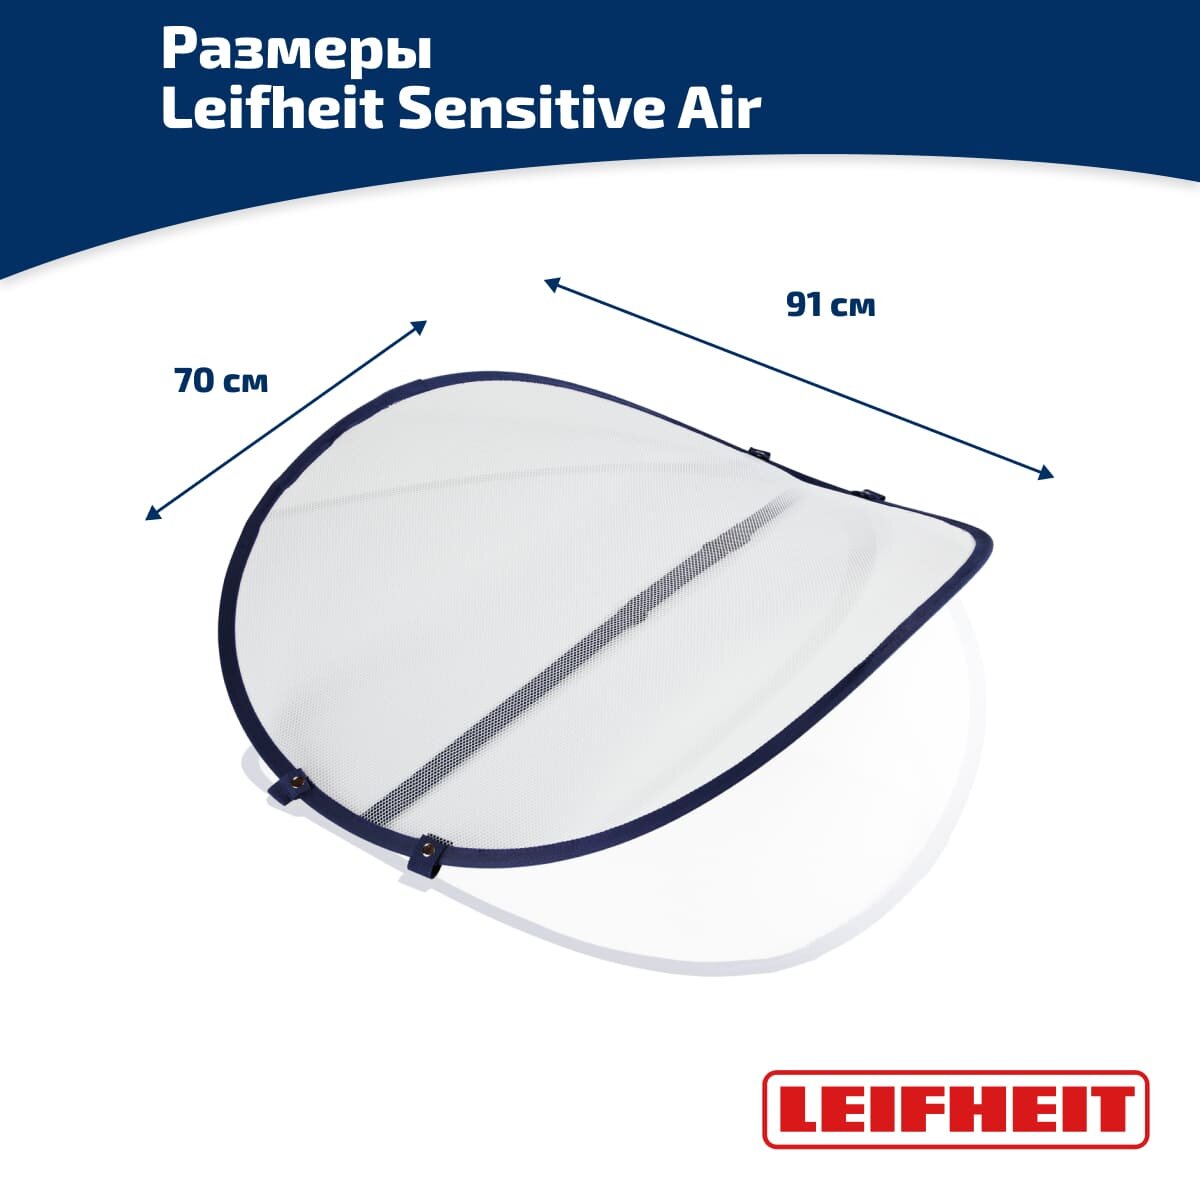 Сушилка для белья Leifheit Sensitive Air